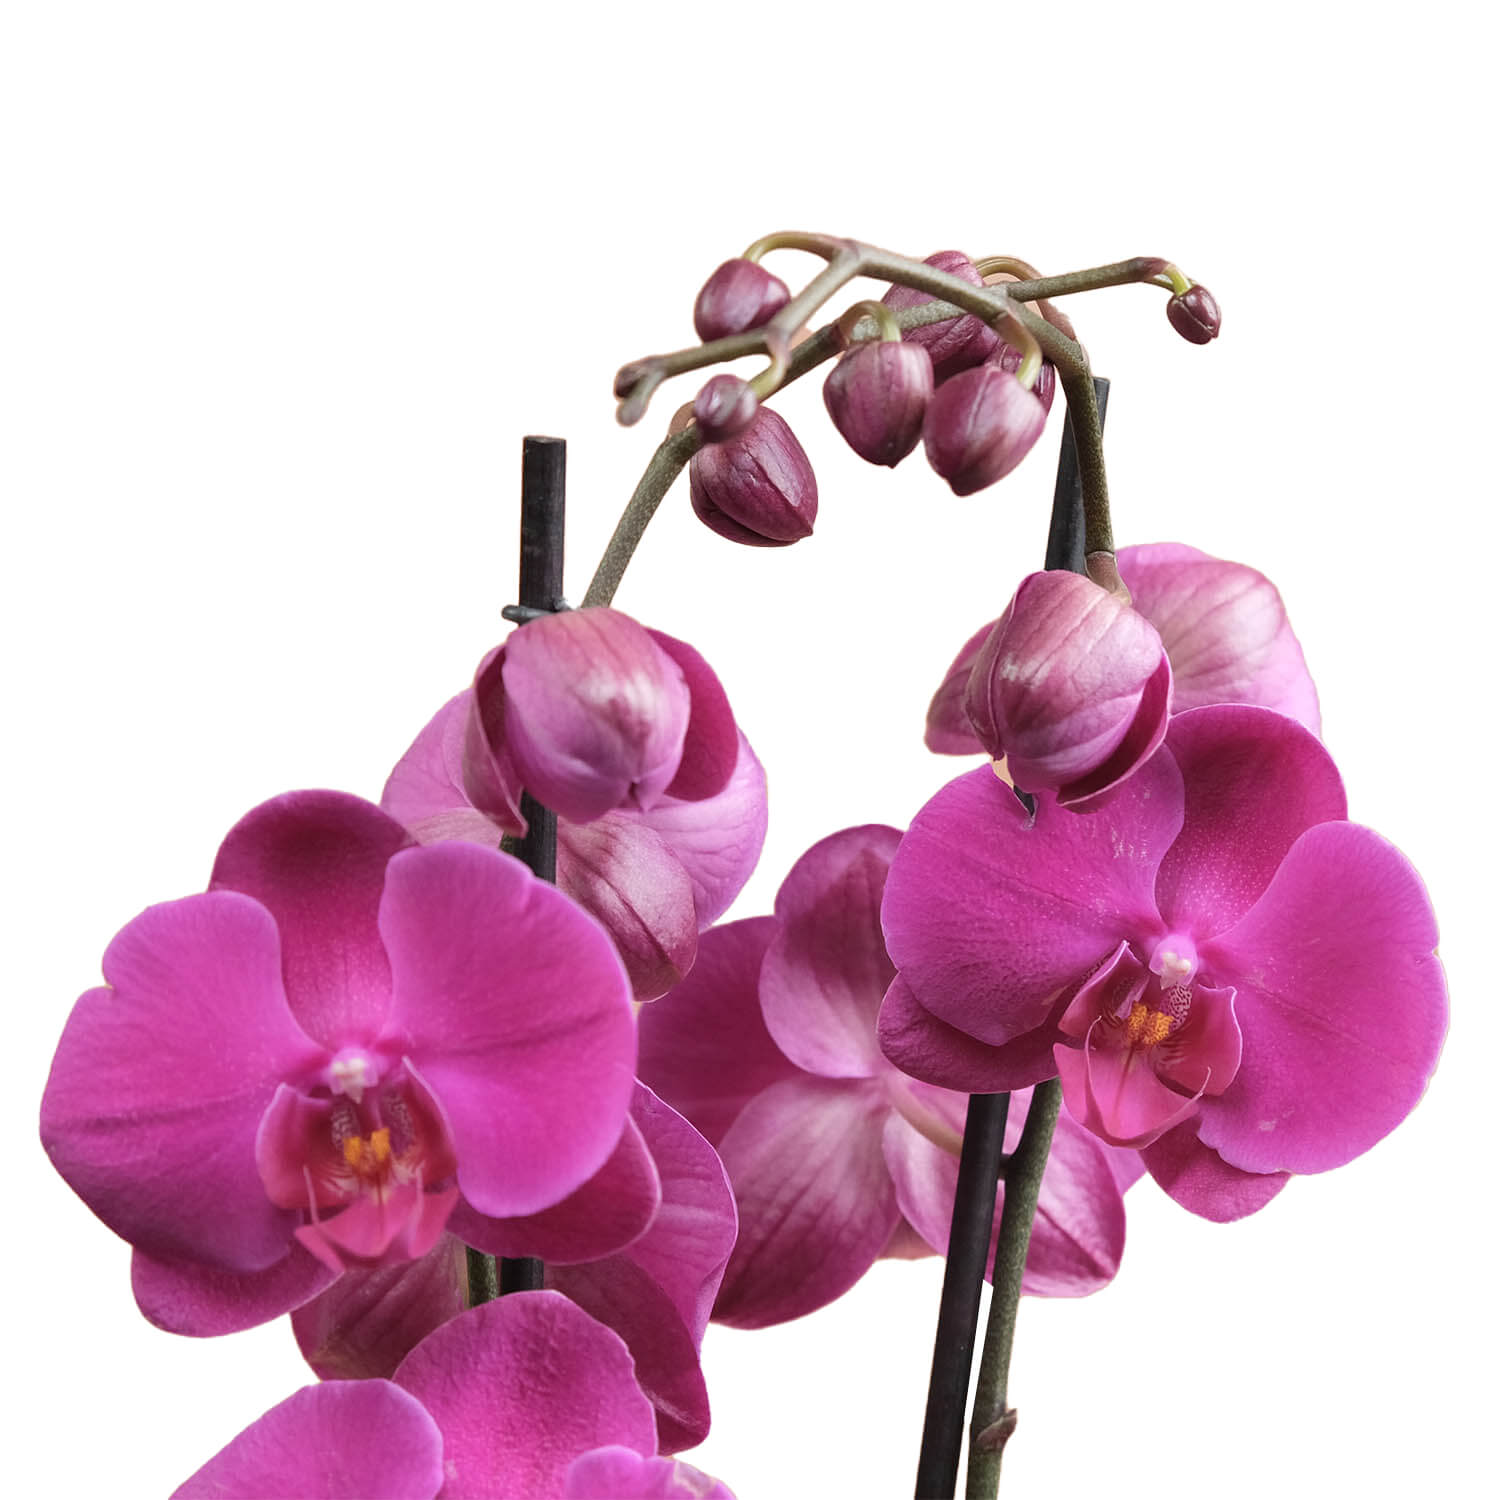 Nadel – Mor & Fuşya Çift Dallı Orkide